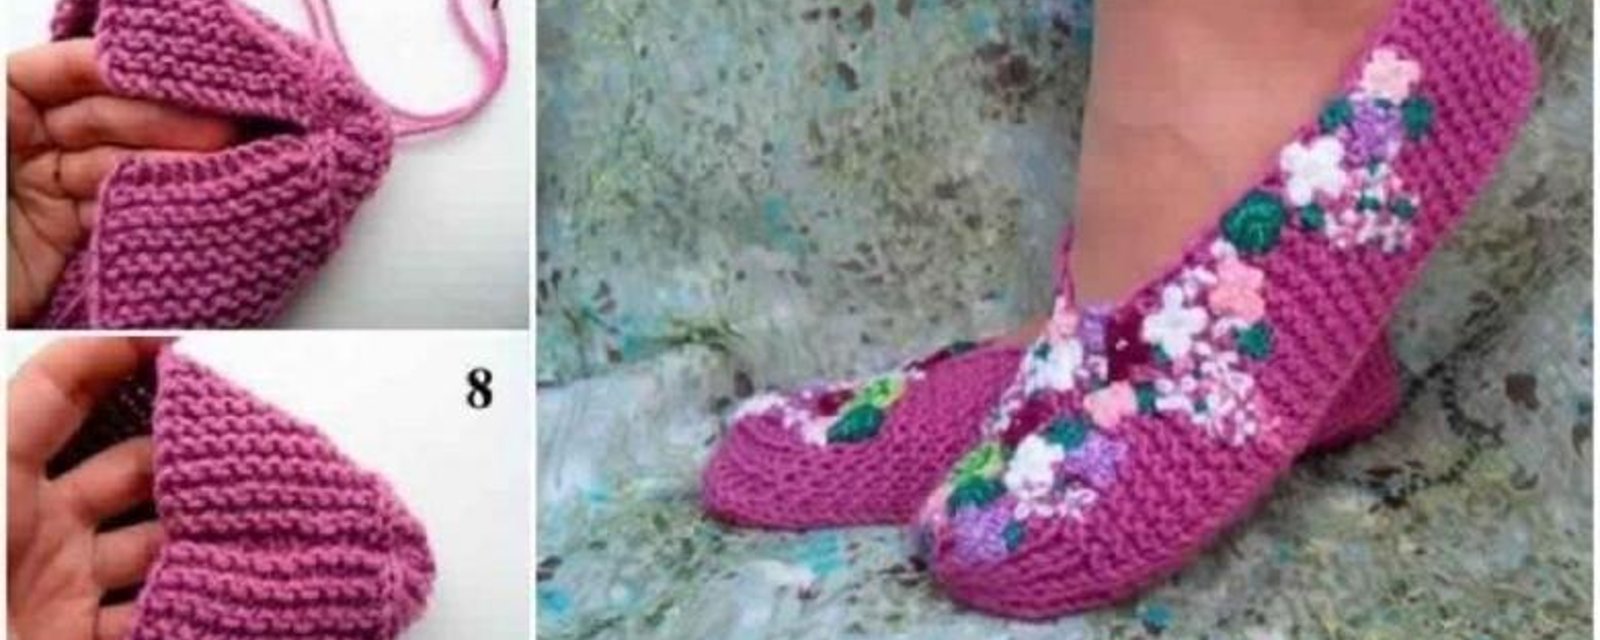 Apprenez à tricoter ces belles pantoufles d'hiver! Une belle idée cadeau à offrir! 